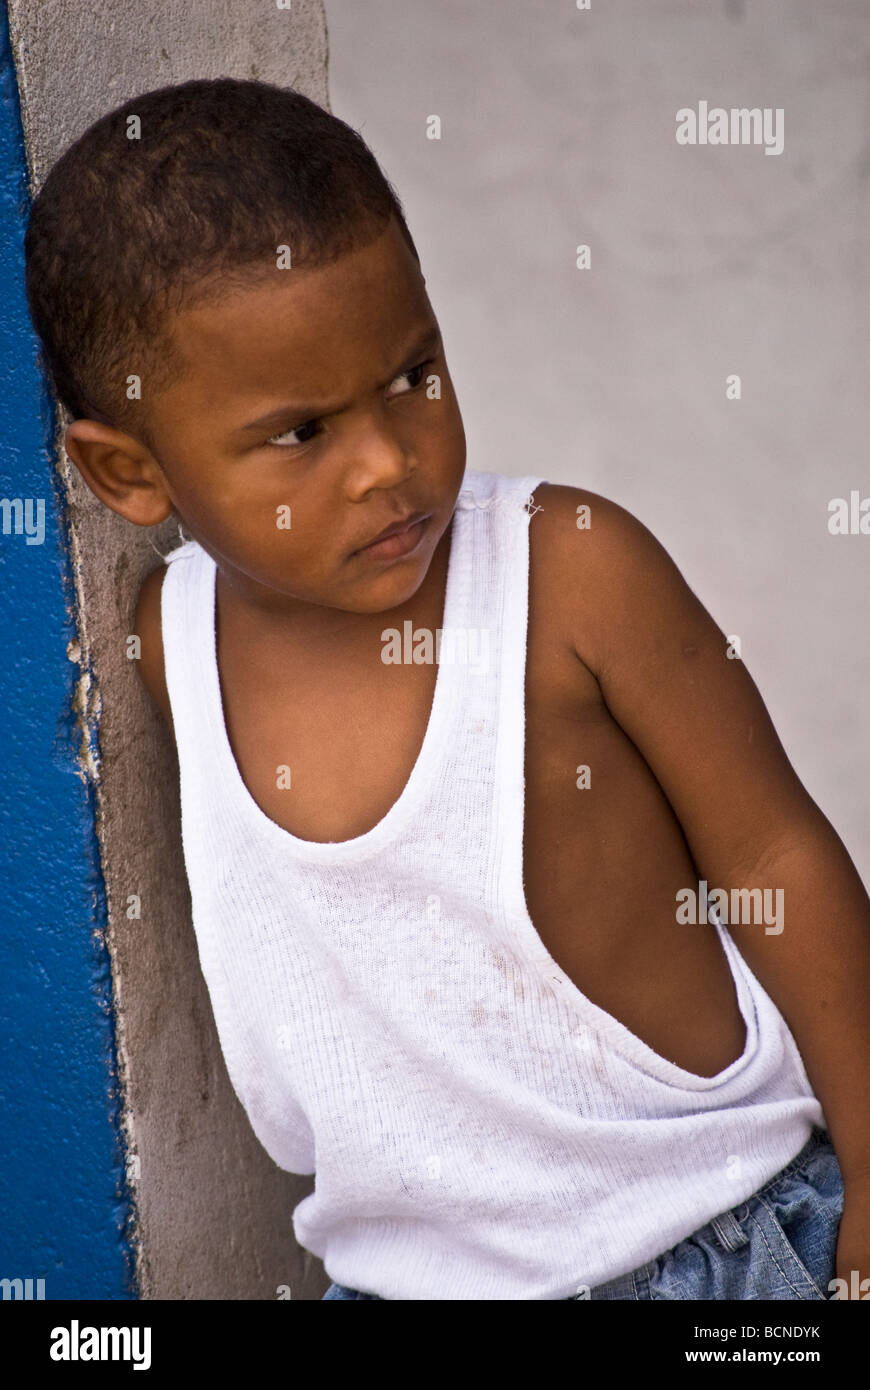 Kleiner Junge stützte sich auf einem hölzernen Pfosten Stockfoto